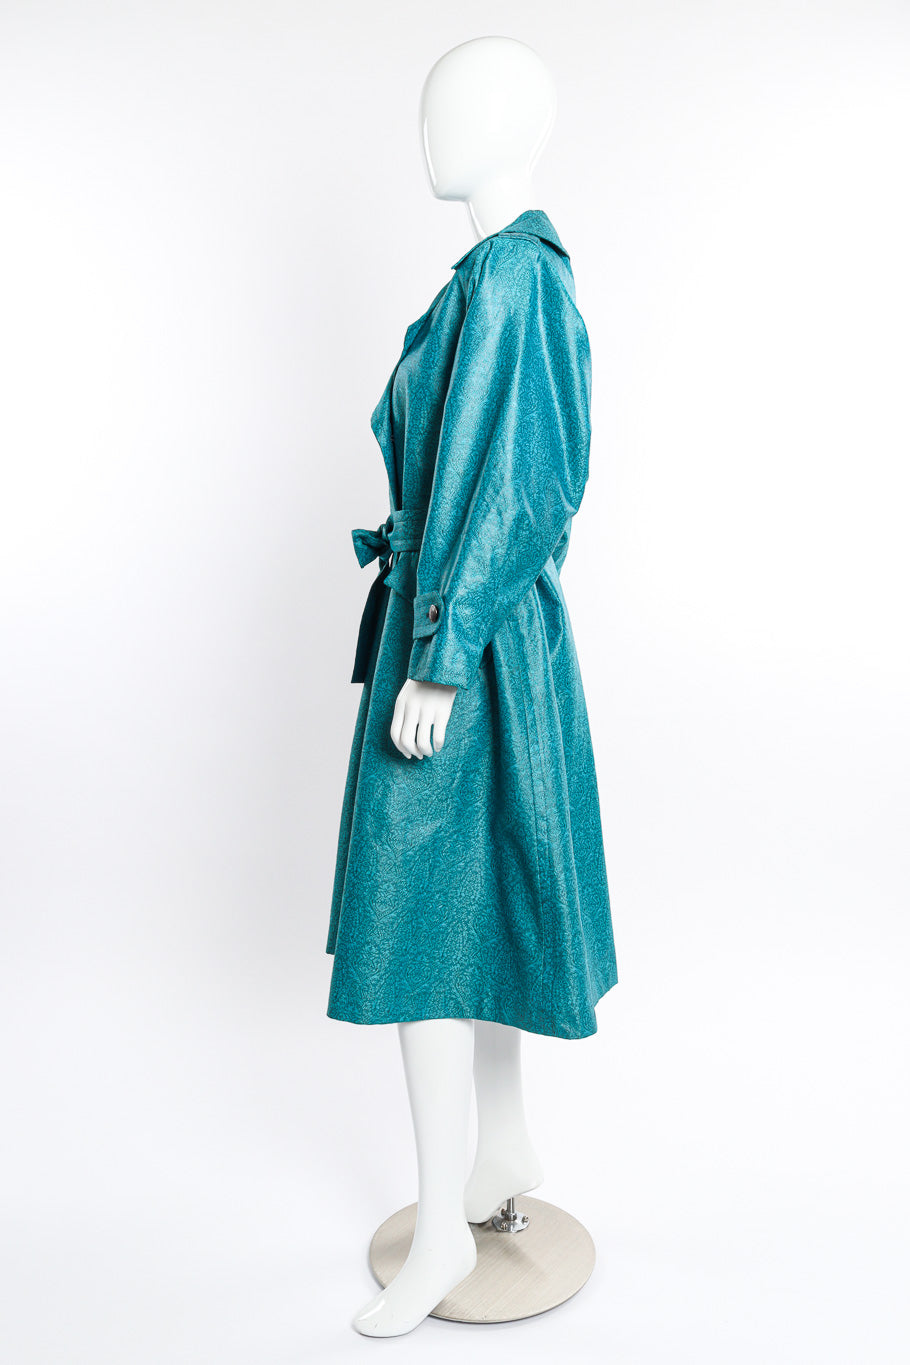 Vintage Yves Saint Laurent Damask Trench Coat side on mannequin @recessla